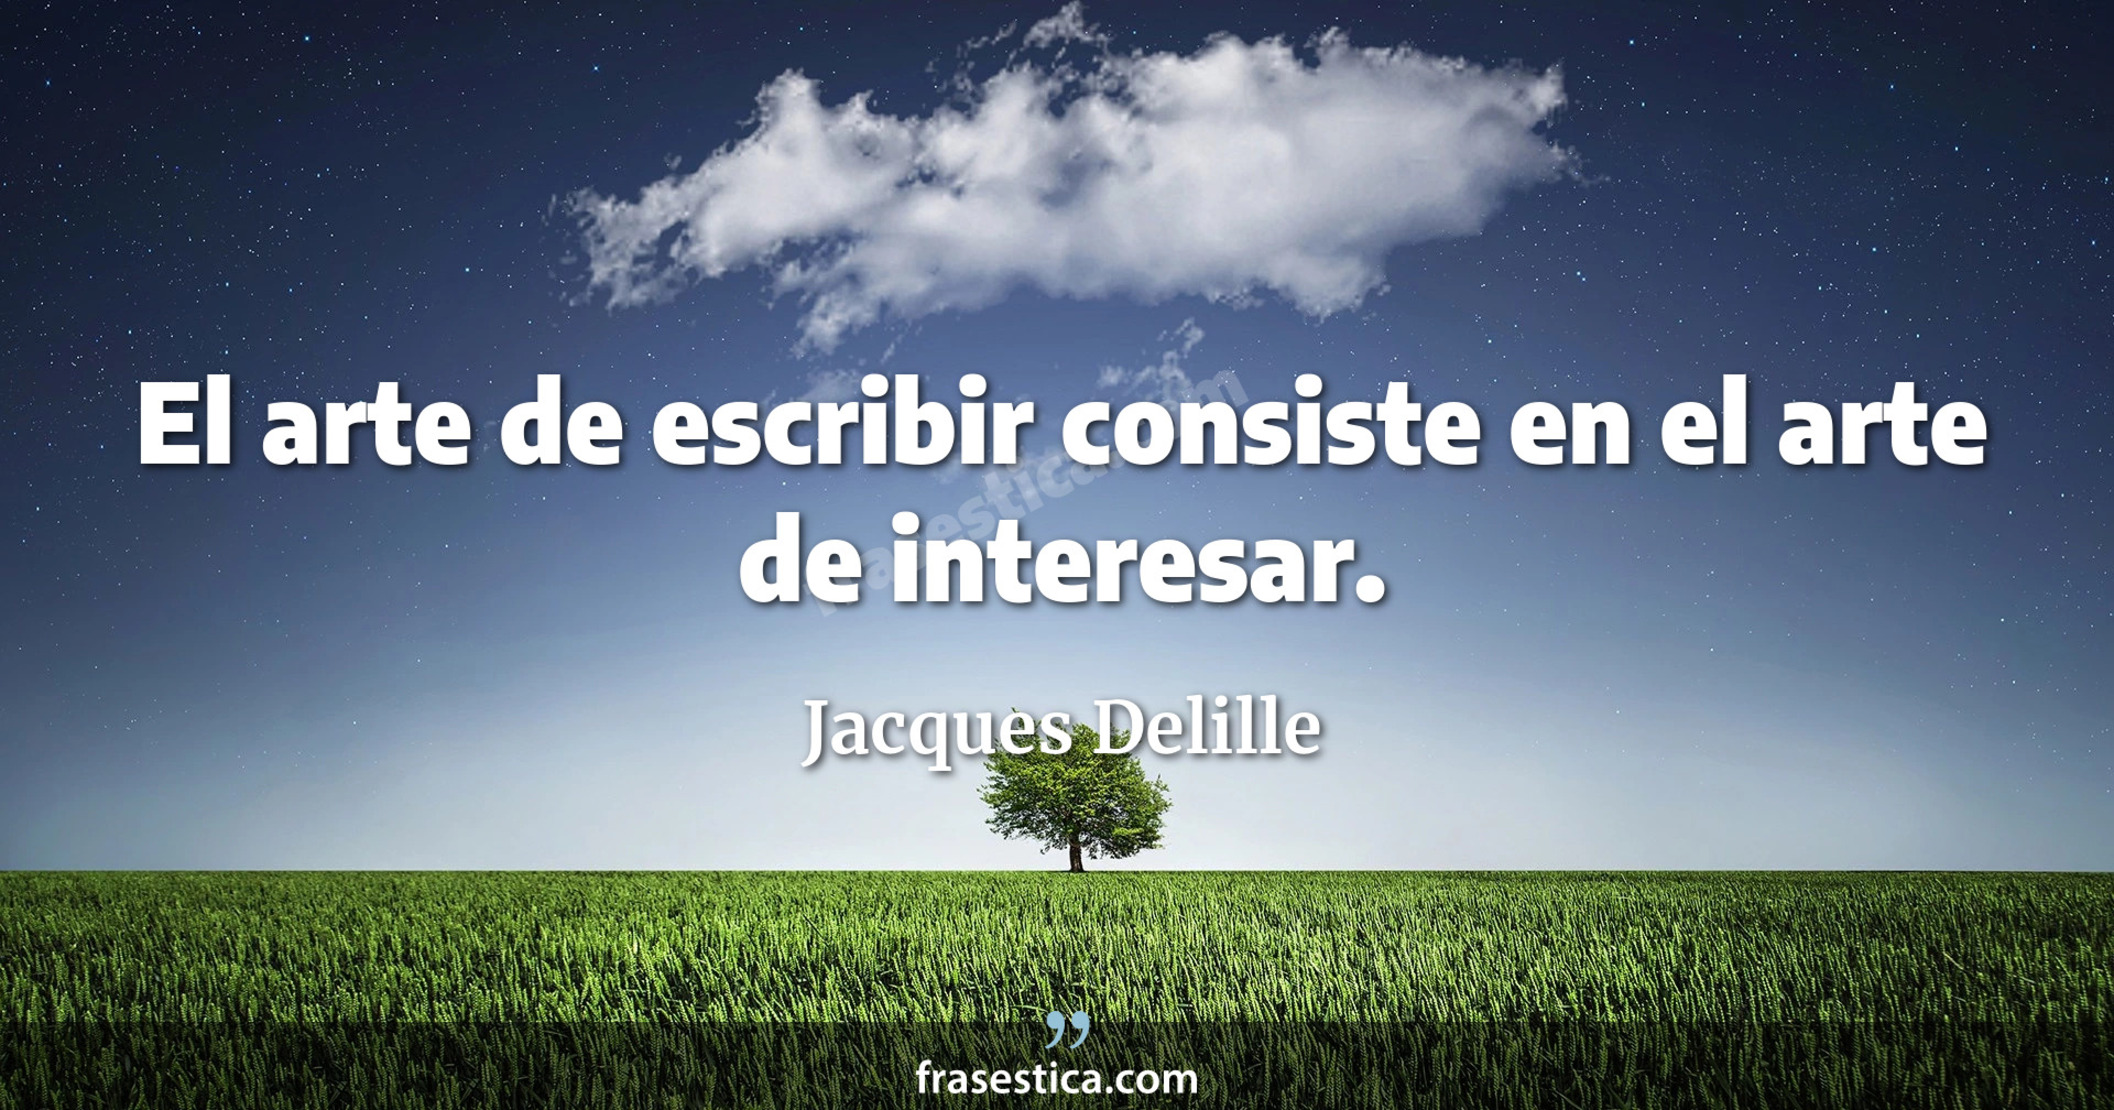 El arte de escribir consiste en el arte de interesar. - Jacques Delille